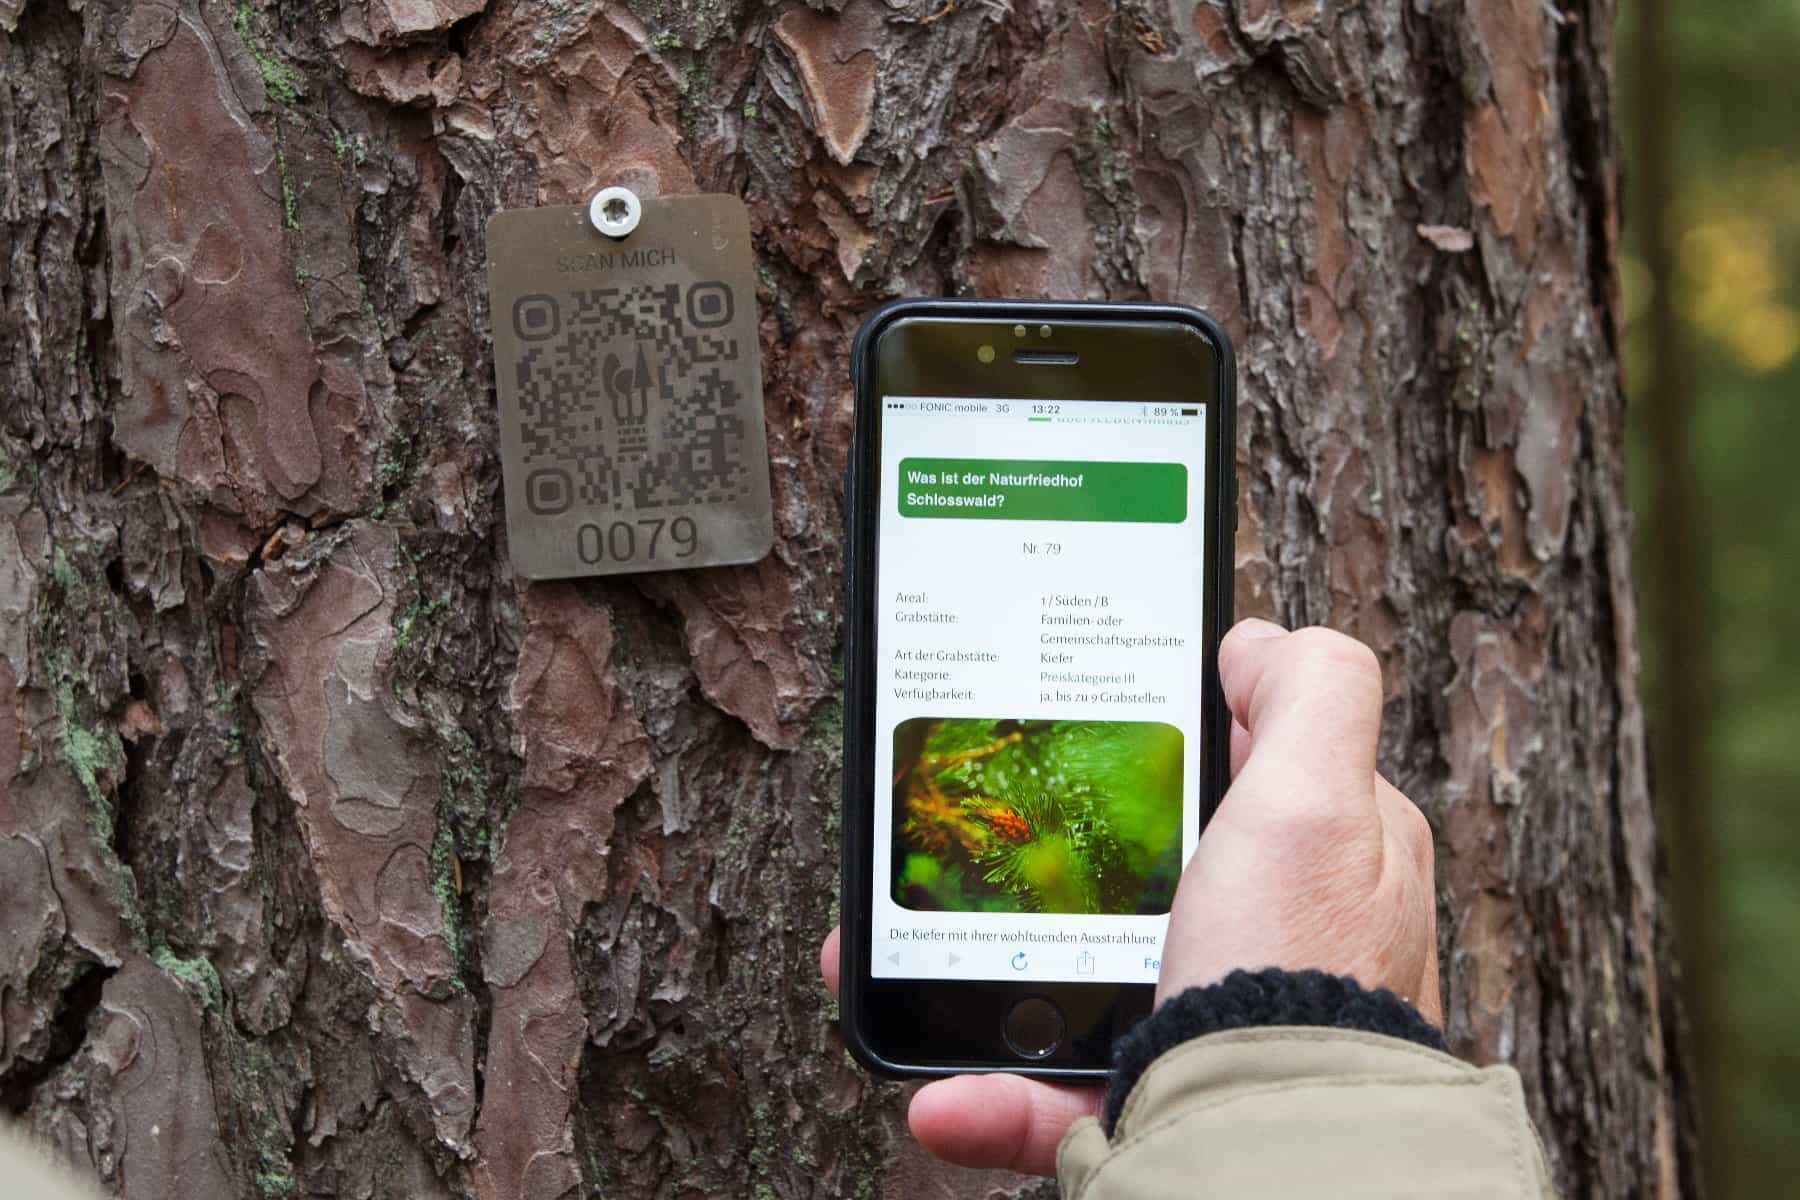 Naturfriiedhof Schlosswald: Abfrage eines QR-Codes mit dem Handy